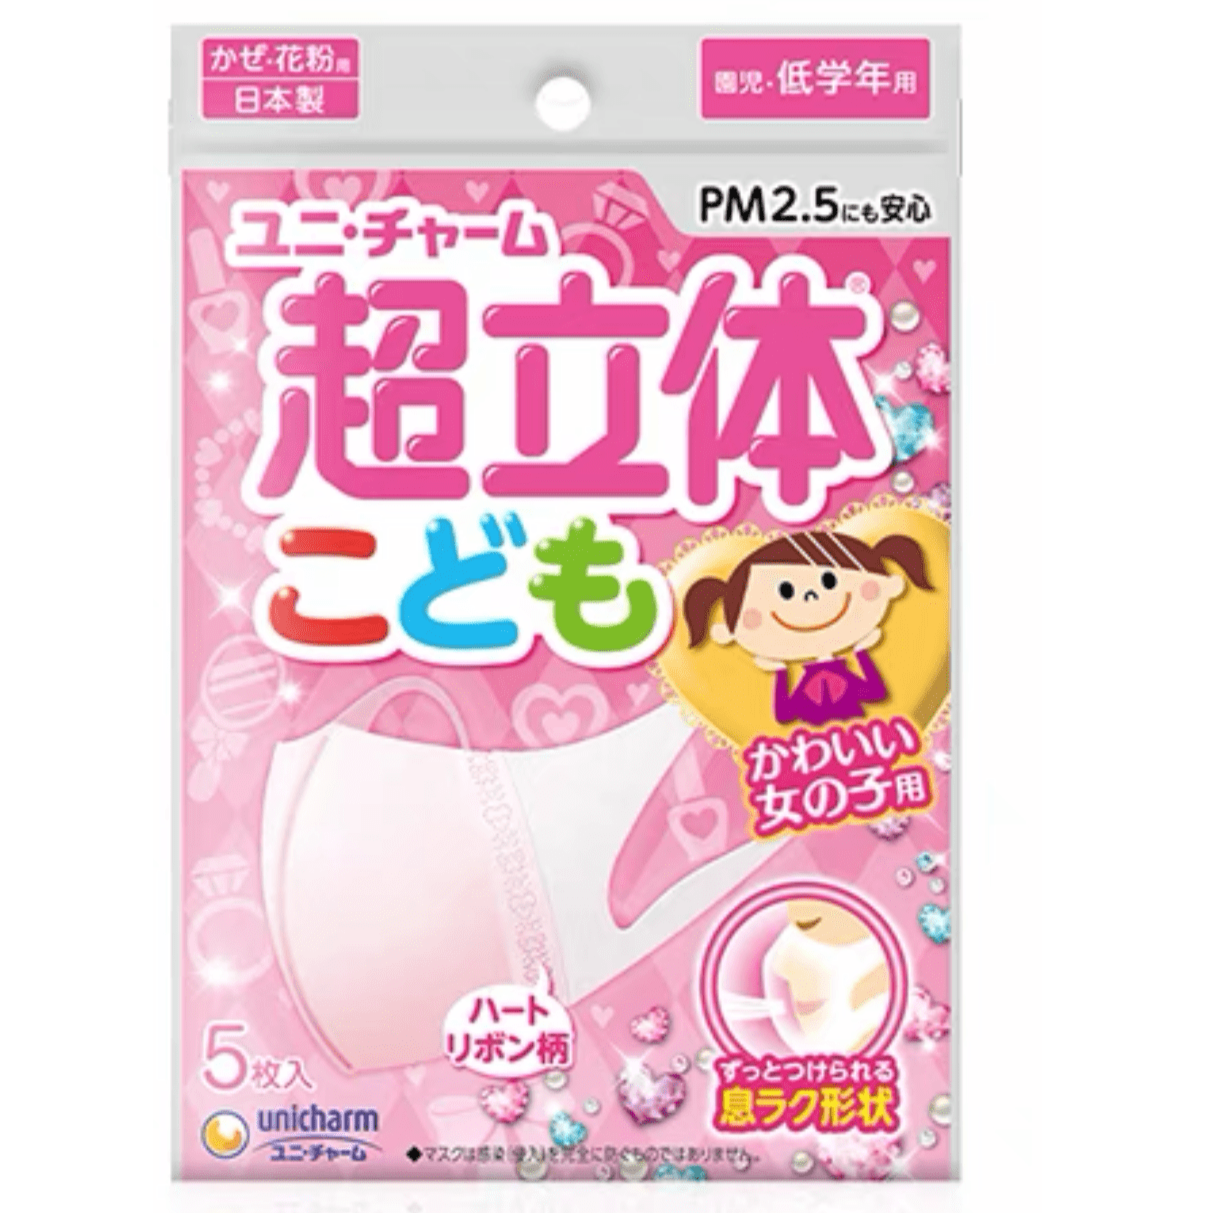 HELMS STORE Kids Unicharm Japan (超立体®) Super 3D Kids Mask 5 Pieces - Pink